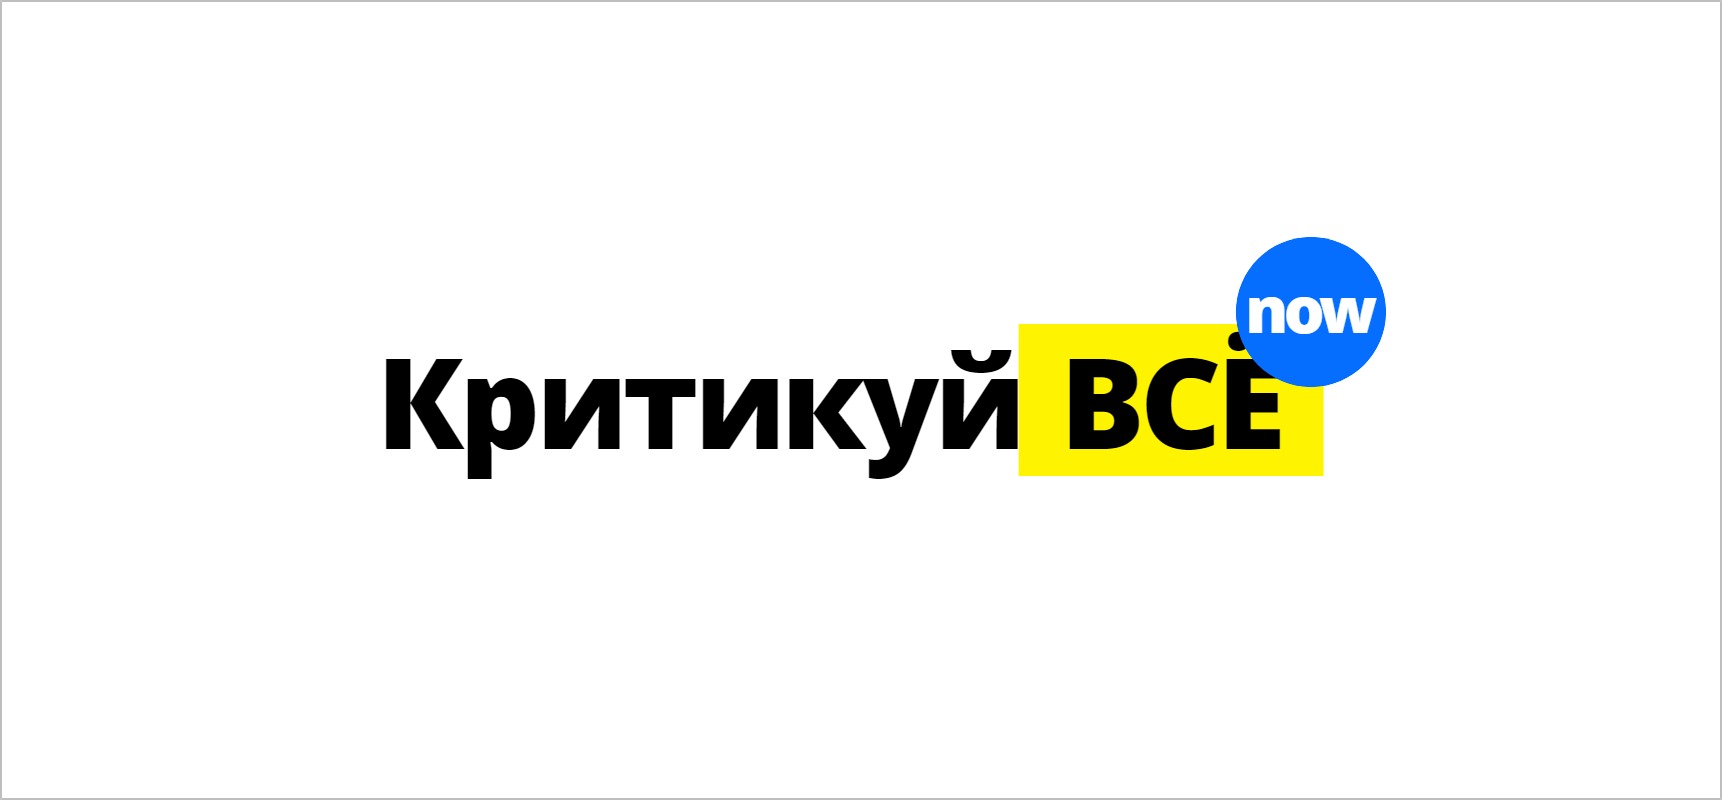 «Как мы создали виральный генератор логотипа Ukraine NOW», Павел Панфилов, Solar Digital